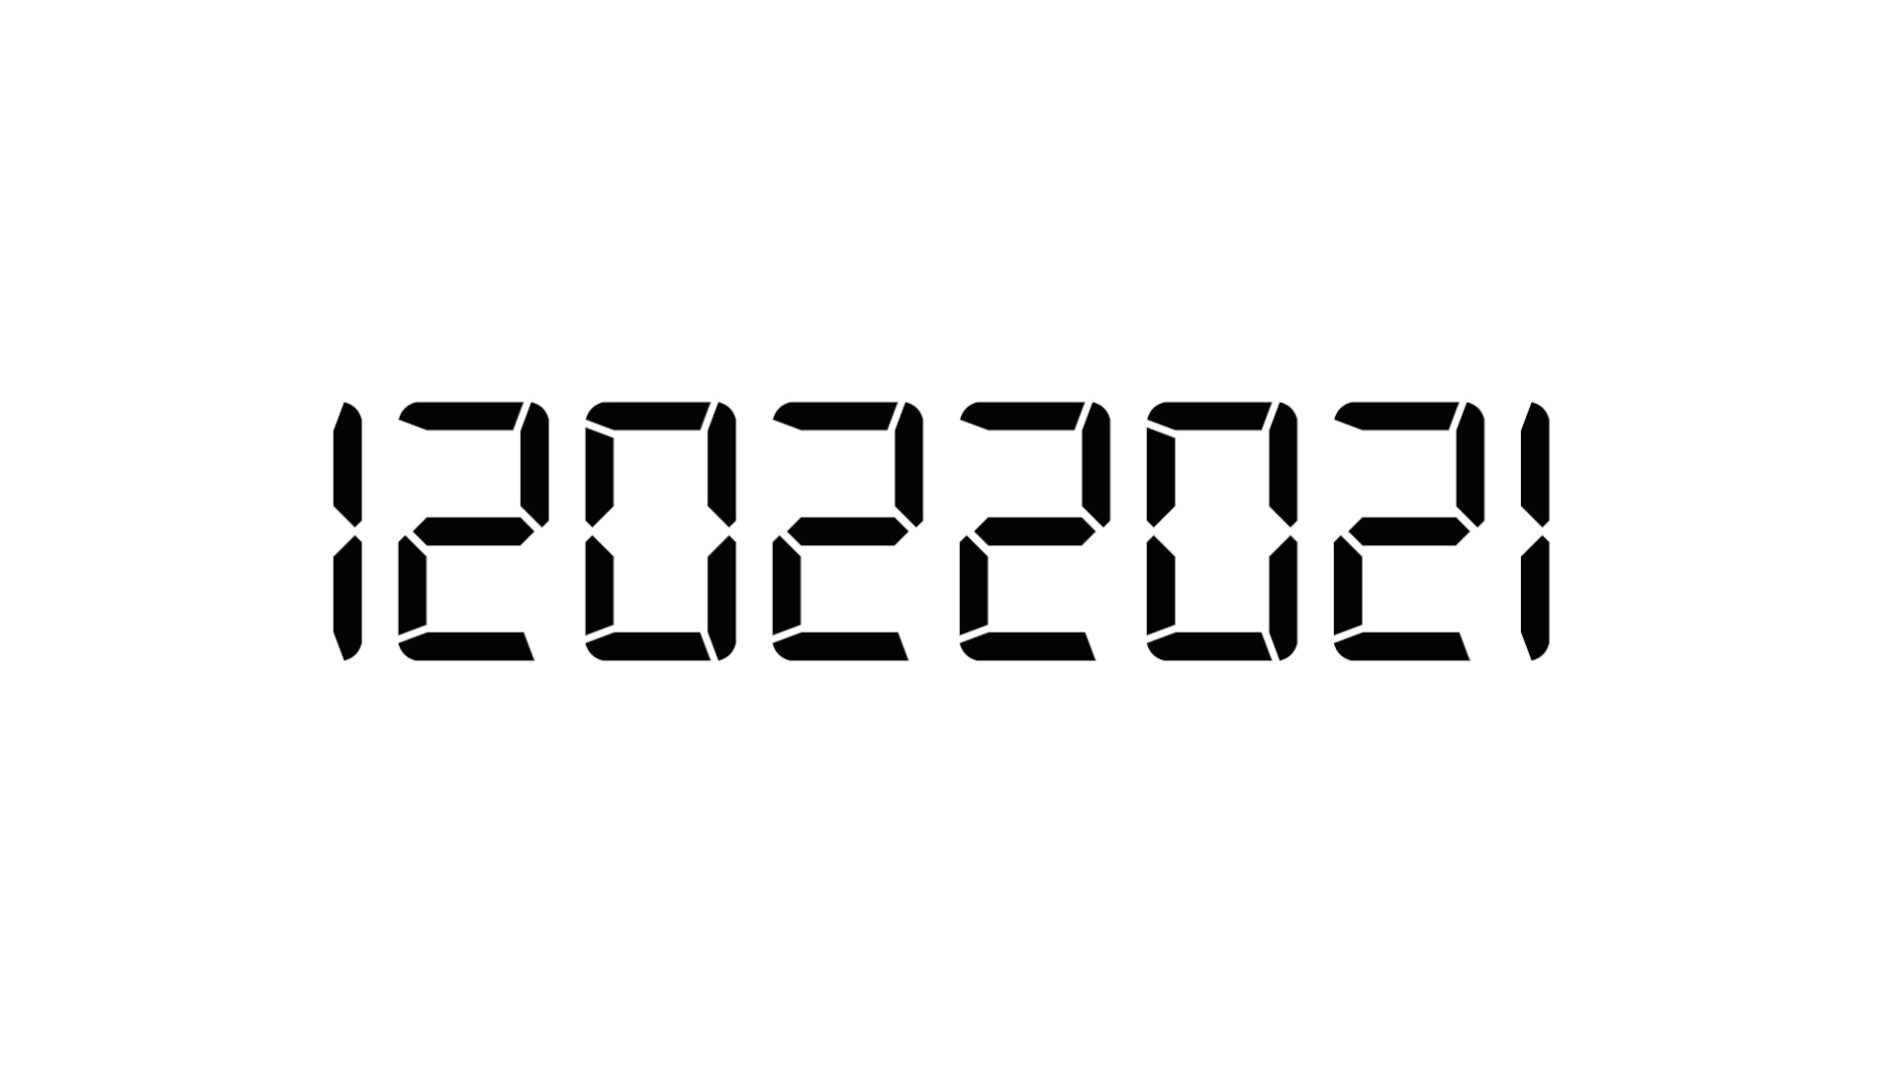 Cyfrowy zapis daty 12.02.2021 w formacie używanym powszechnie w U.S.A. Font Digital-7.